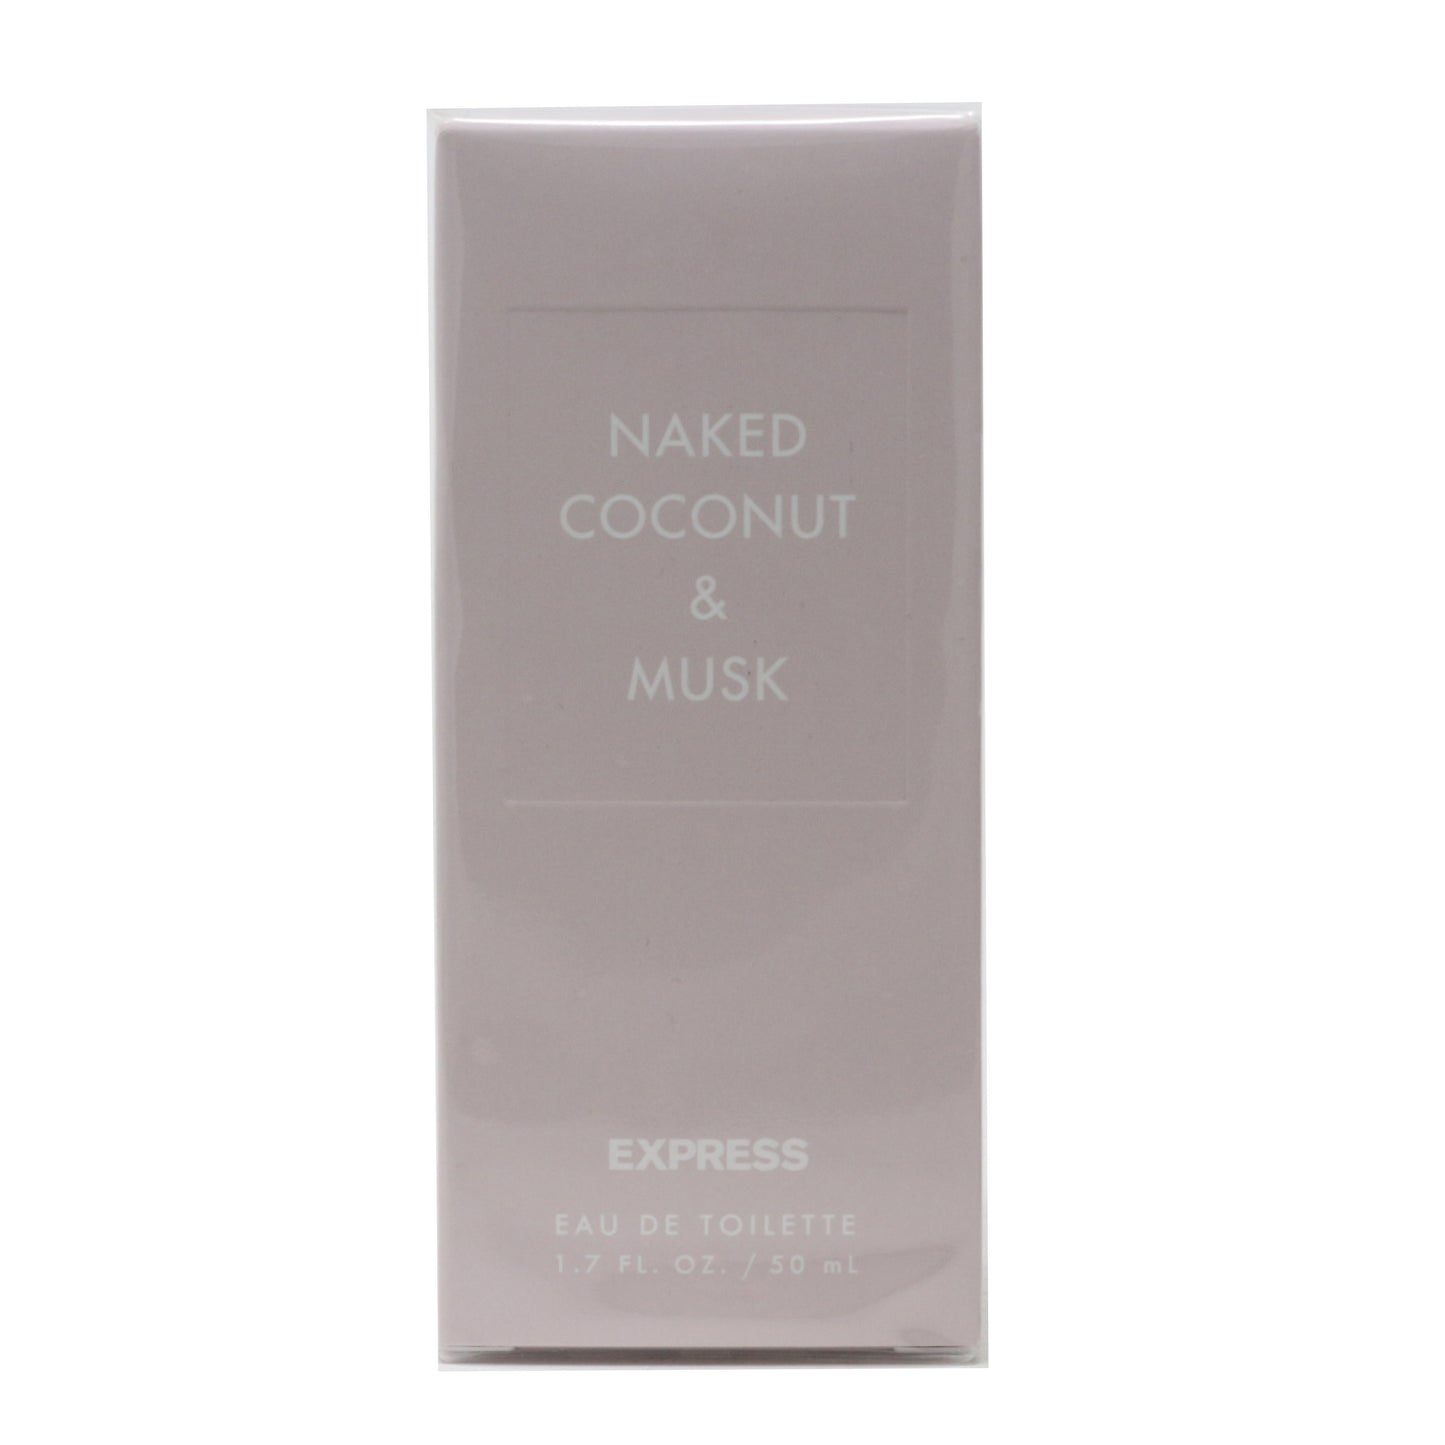 Express Naked Coconut & Musk Eau De Toilette 1.7oz/50ml New In Box